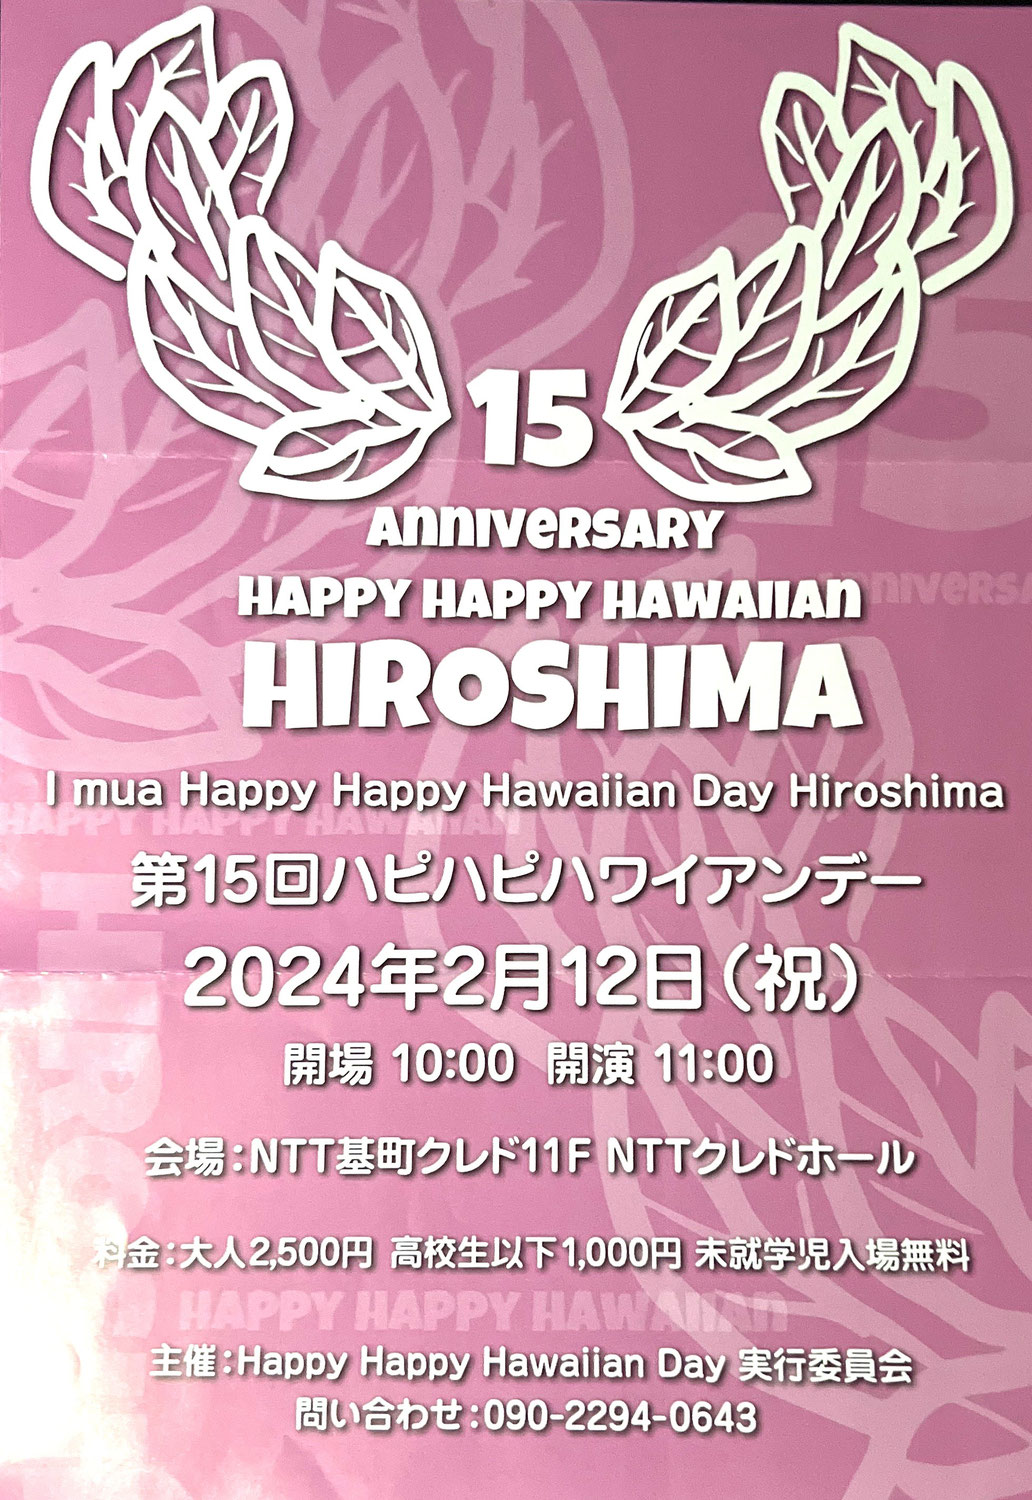 ピカケジャスミンは2024.2.12(祝)第15回ハピハピハワイアンデー広島に出店致します。